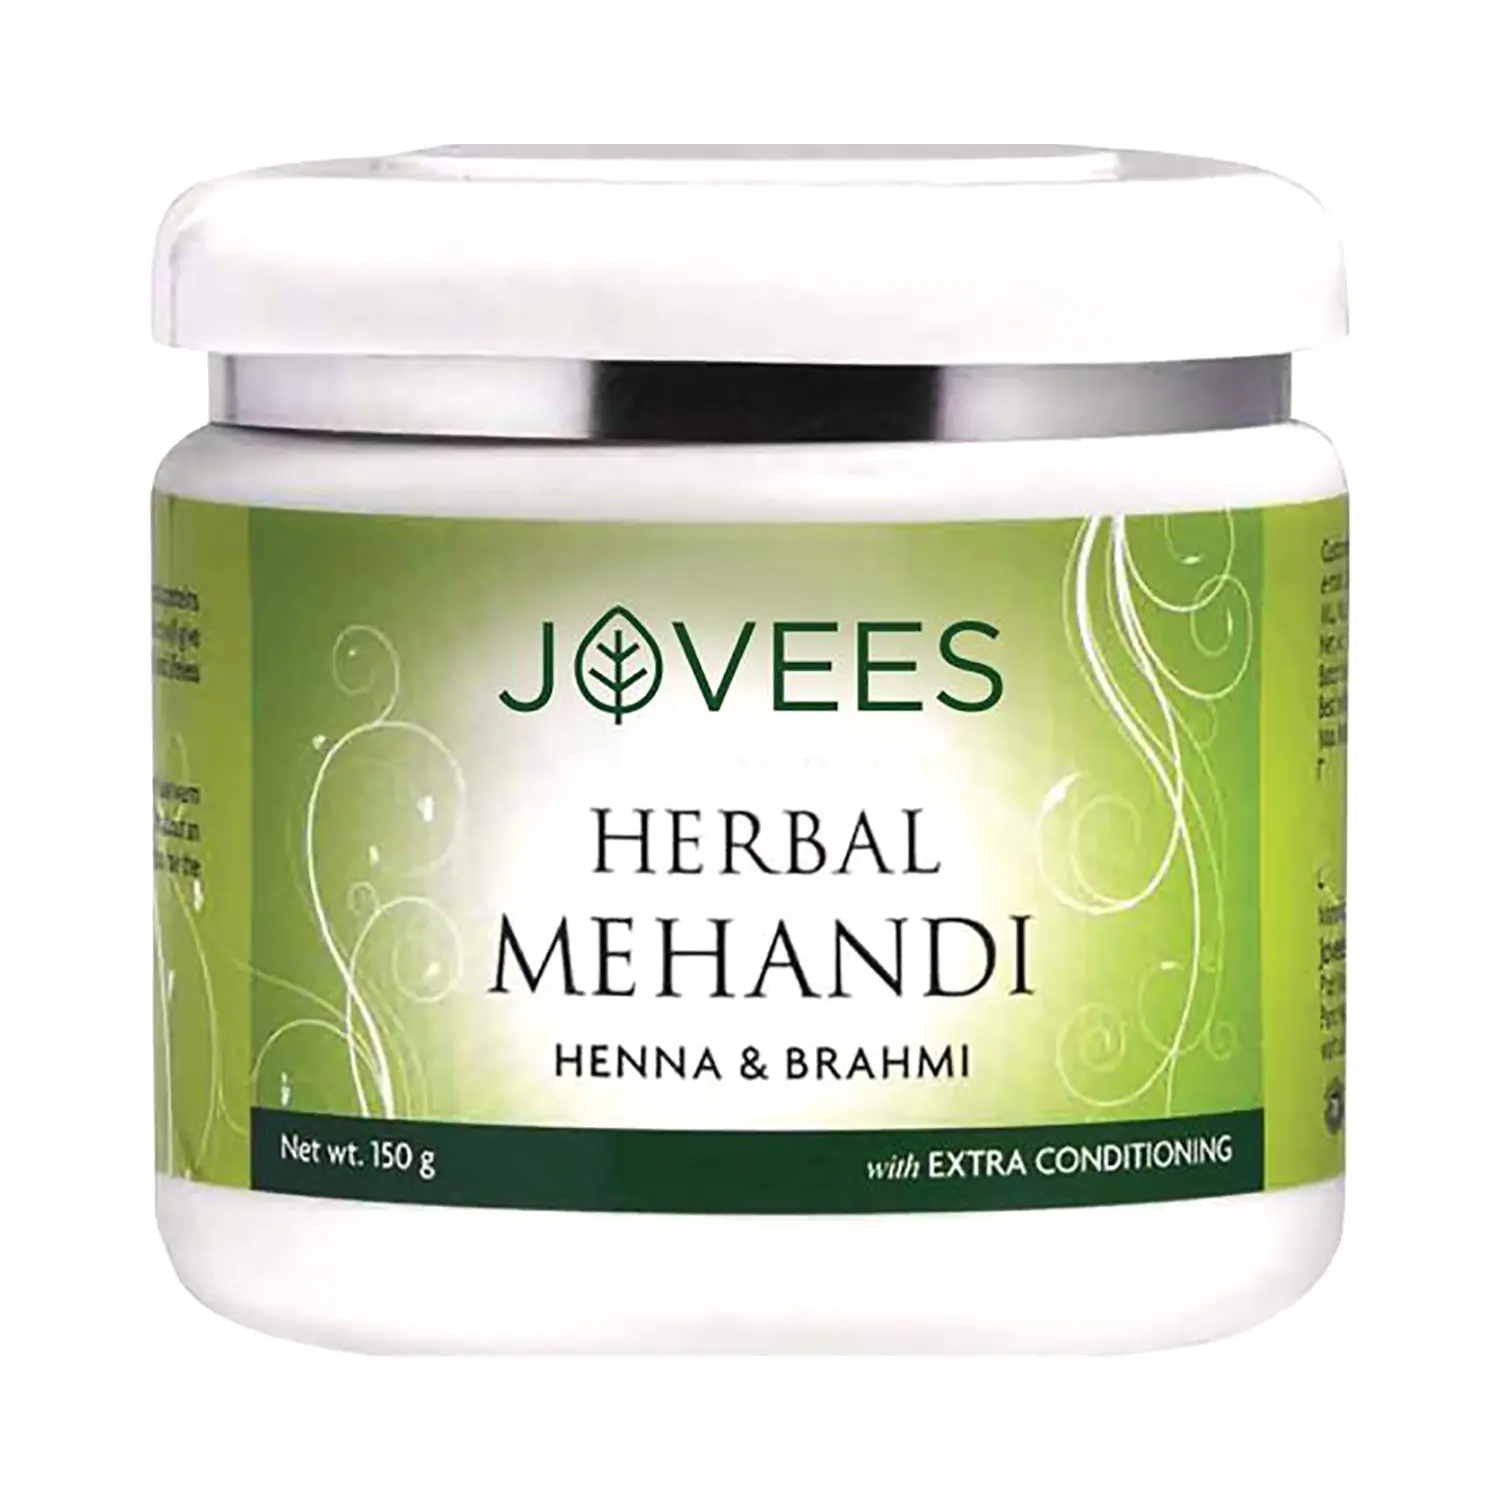 Jovees Herbal Henna & Brahmi Mehandi (150g)